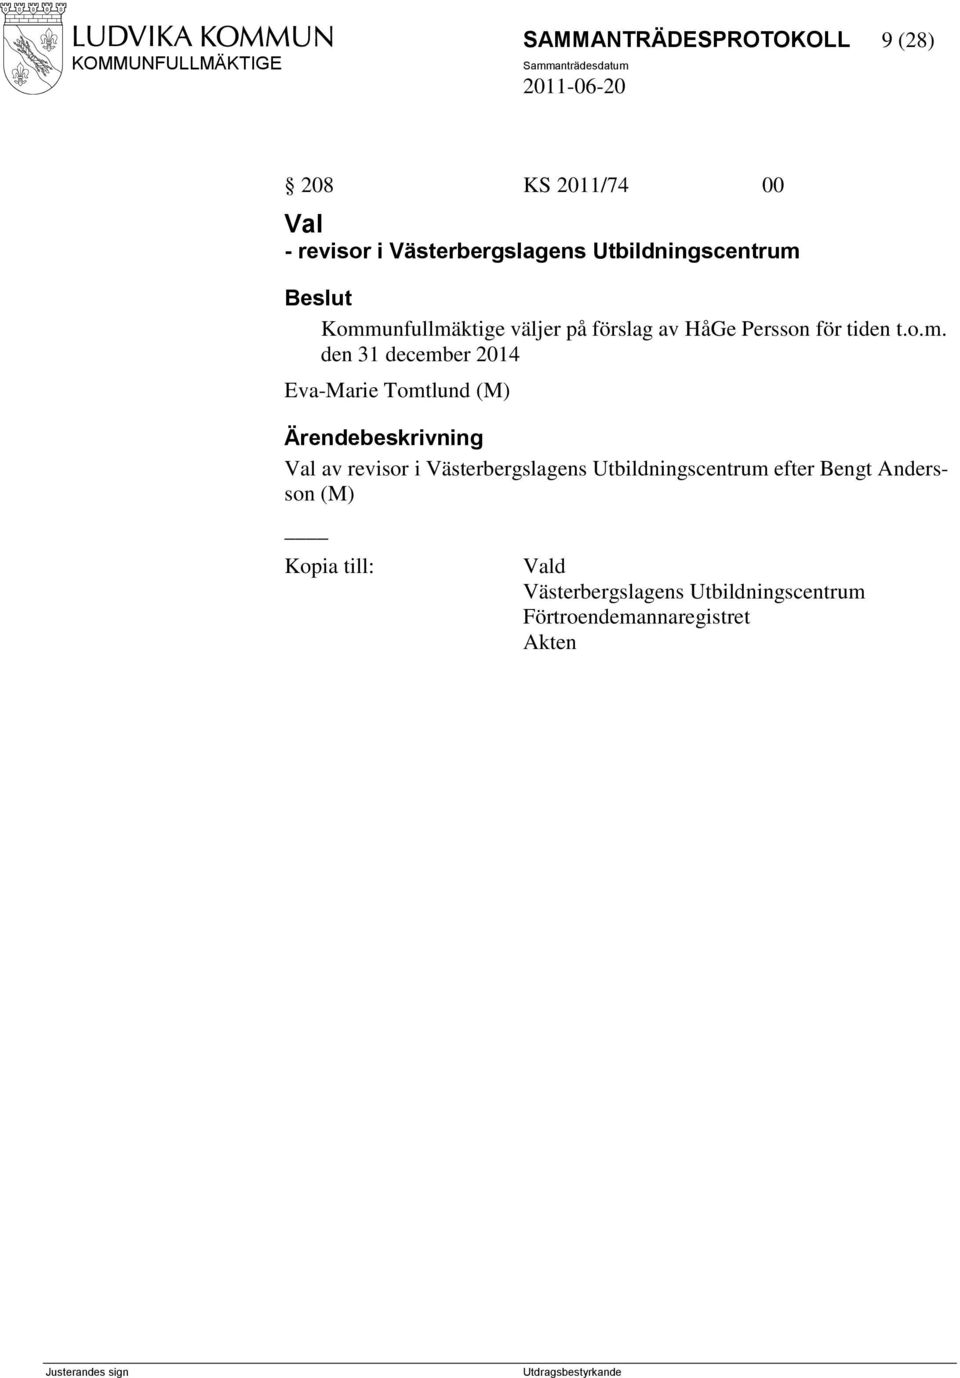 Kommunfullmäktige väljer på förslag av HåGe Persson för tiden t.o.m. den 31 december 2014